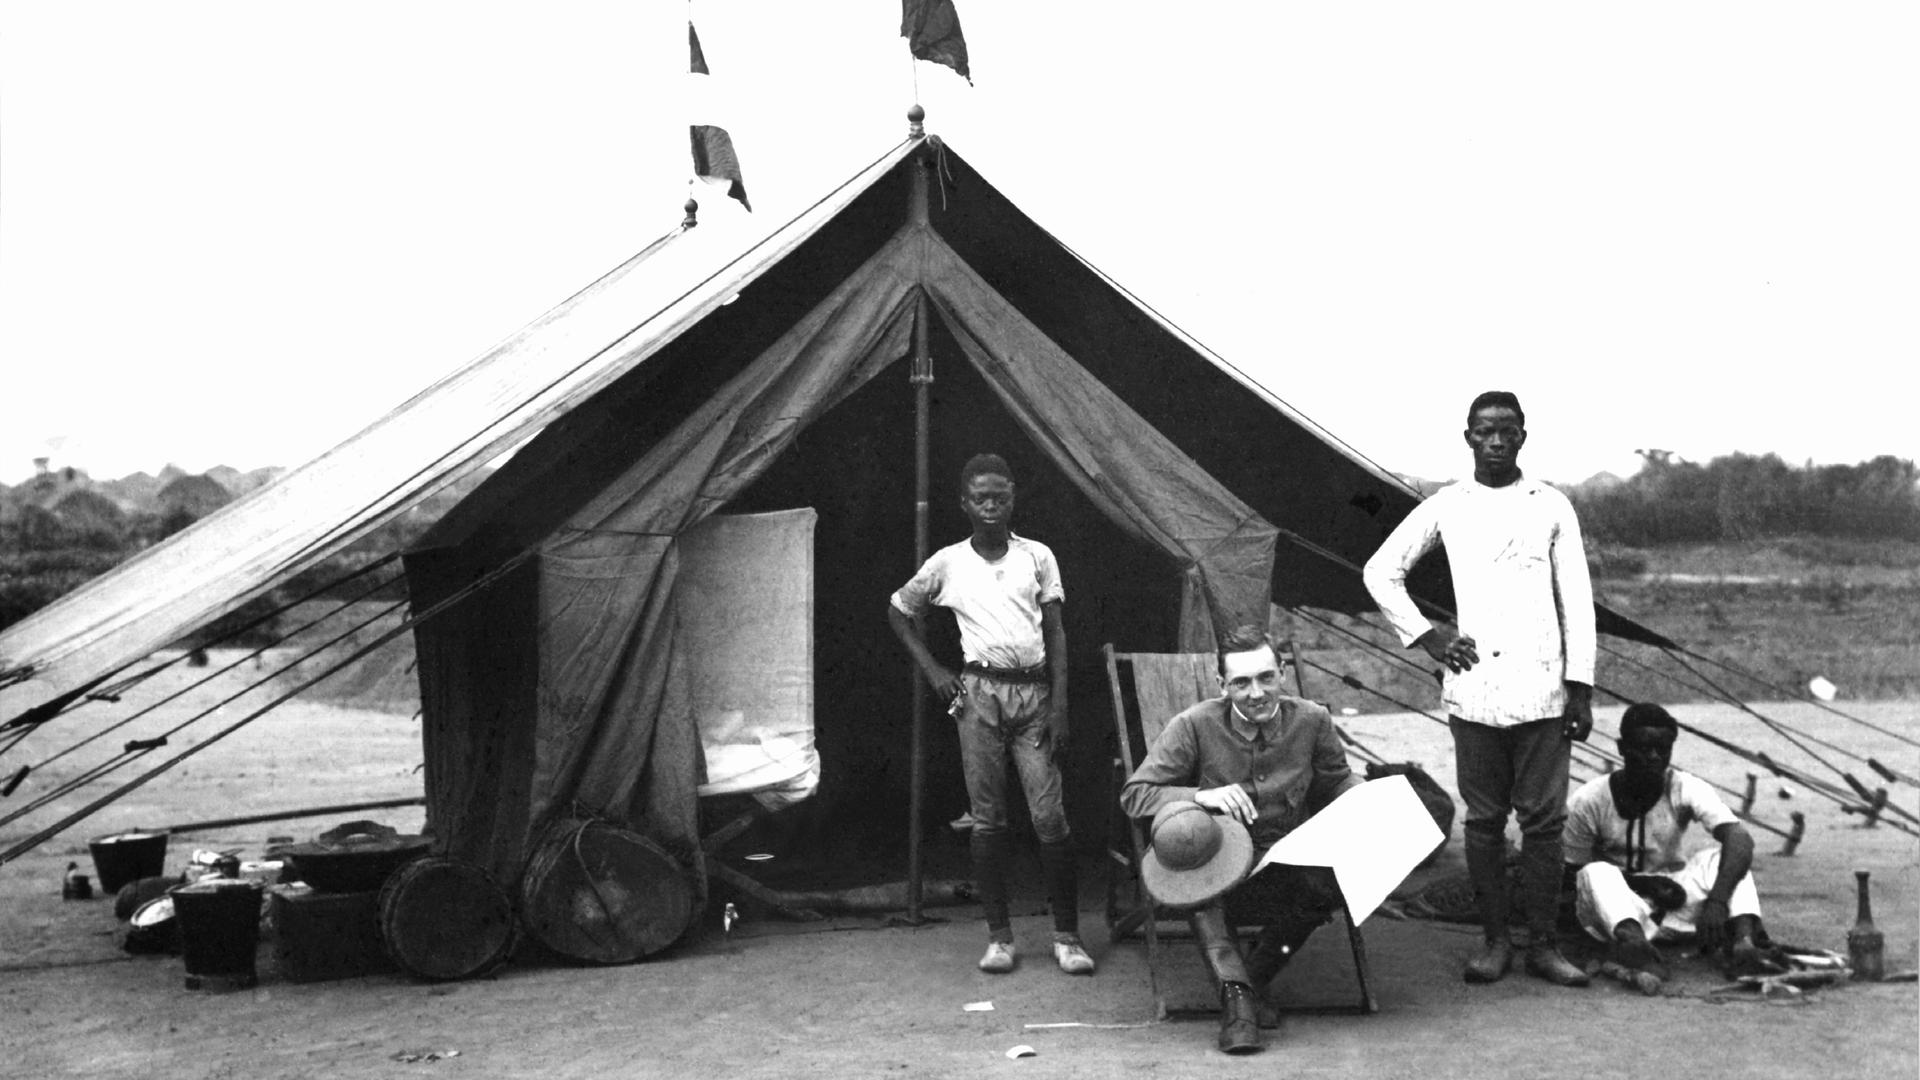 Ein deutscher Regierungsbeamter vor seinem Zelt auf einer Reise ins Innere der deutschen Kolonie Kamerun (undatierte Aufnahme aus der Kolonialzeit).